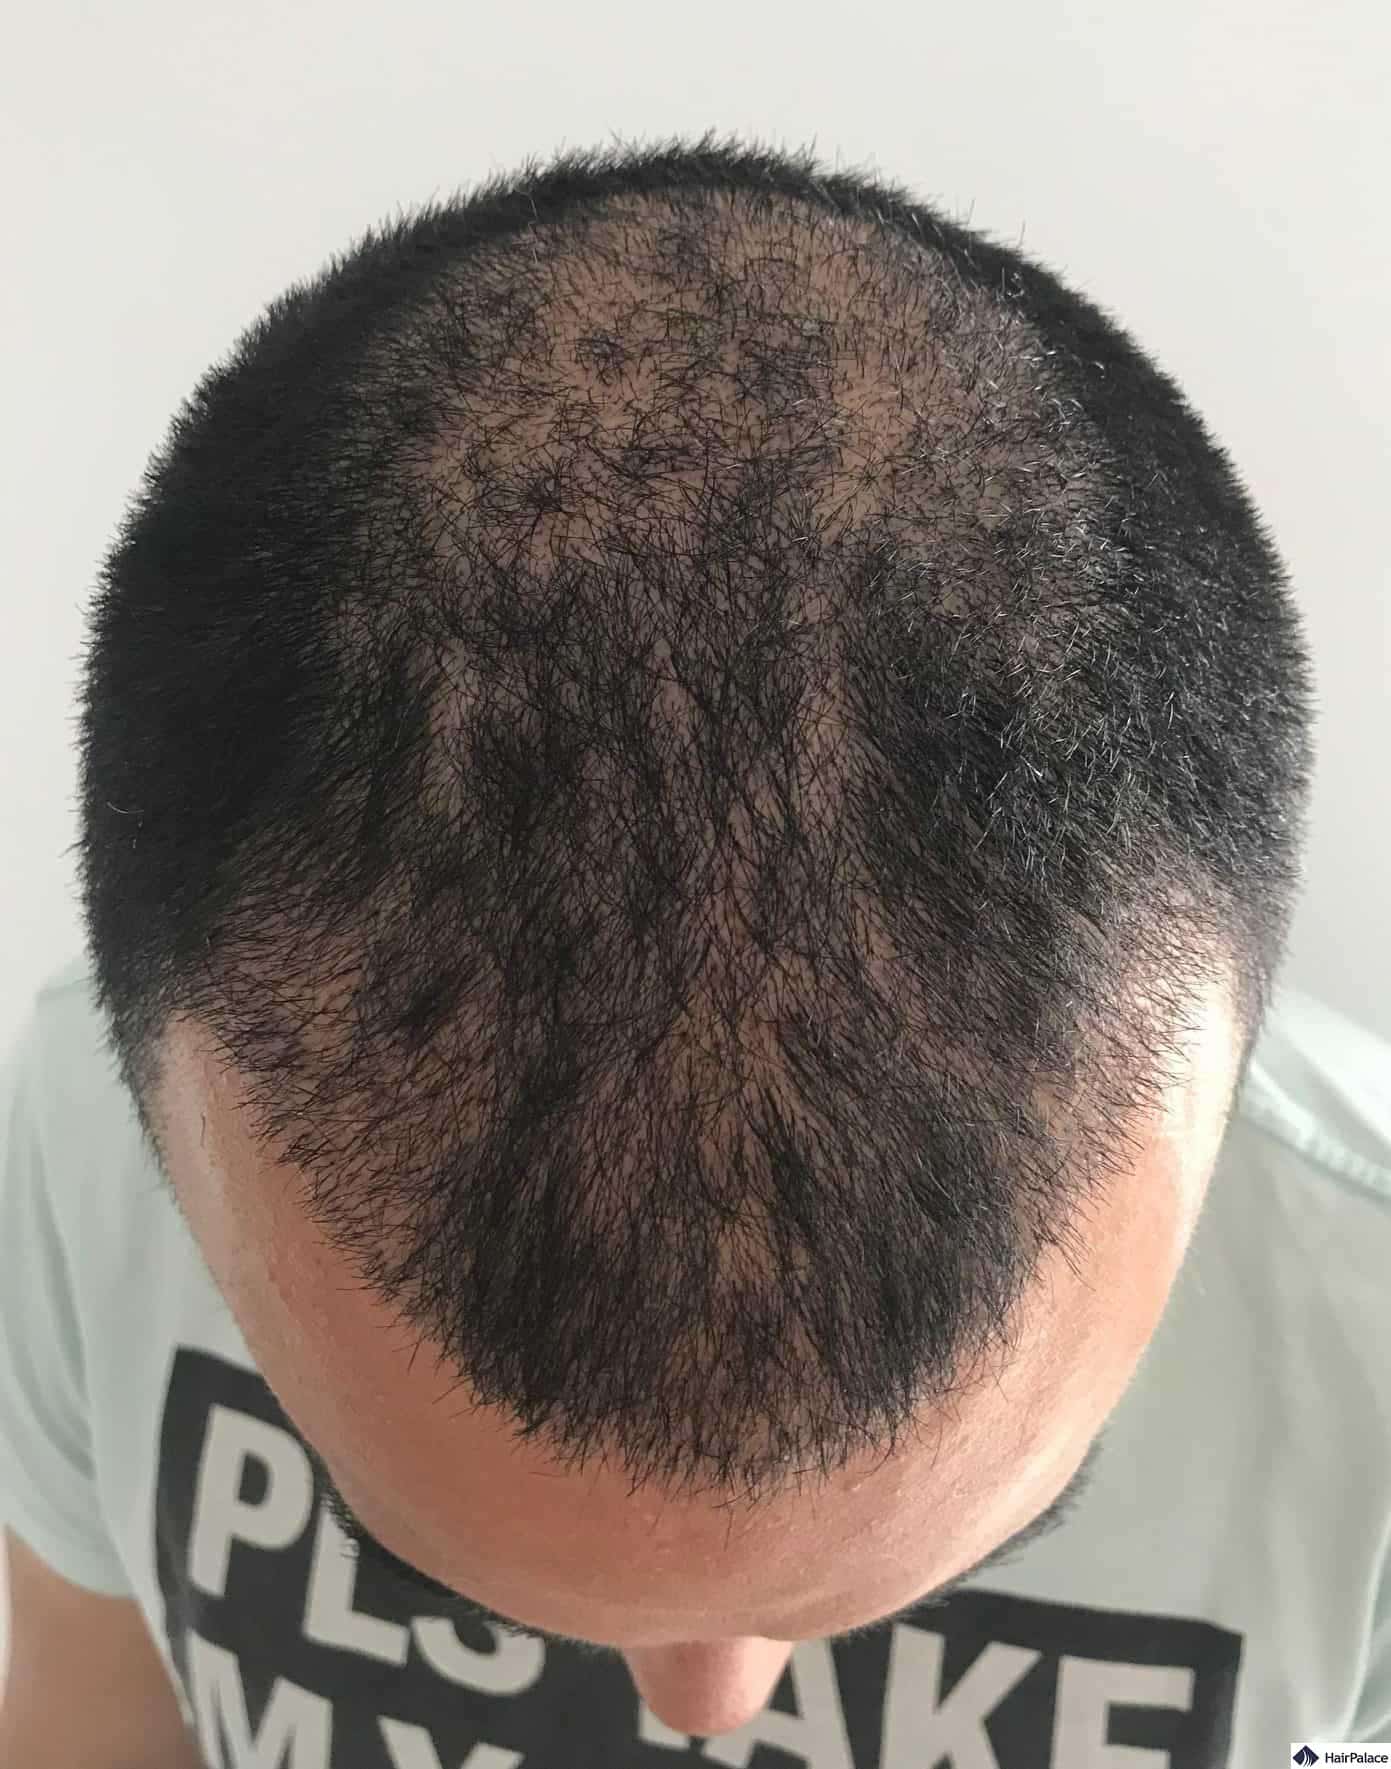 Második kontrollkép 3 héttel a kezelés után. A fejbőrön már nincsenek pörkök, és a beültetett hajak többsége a helyén van.